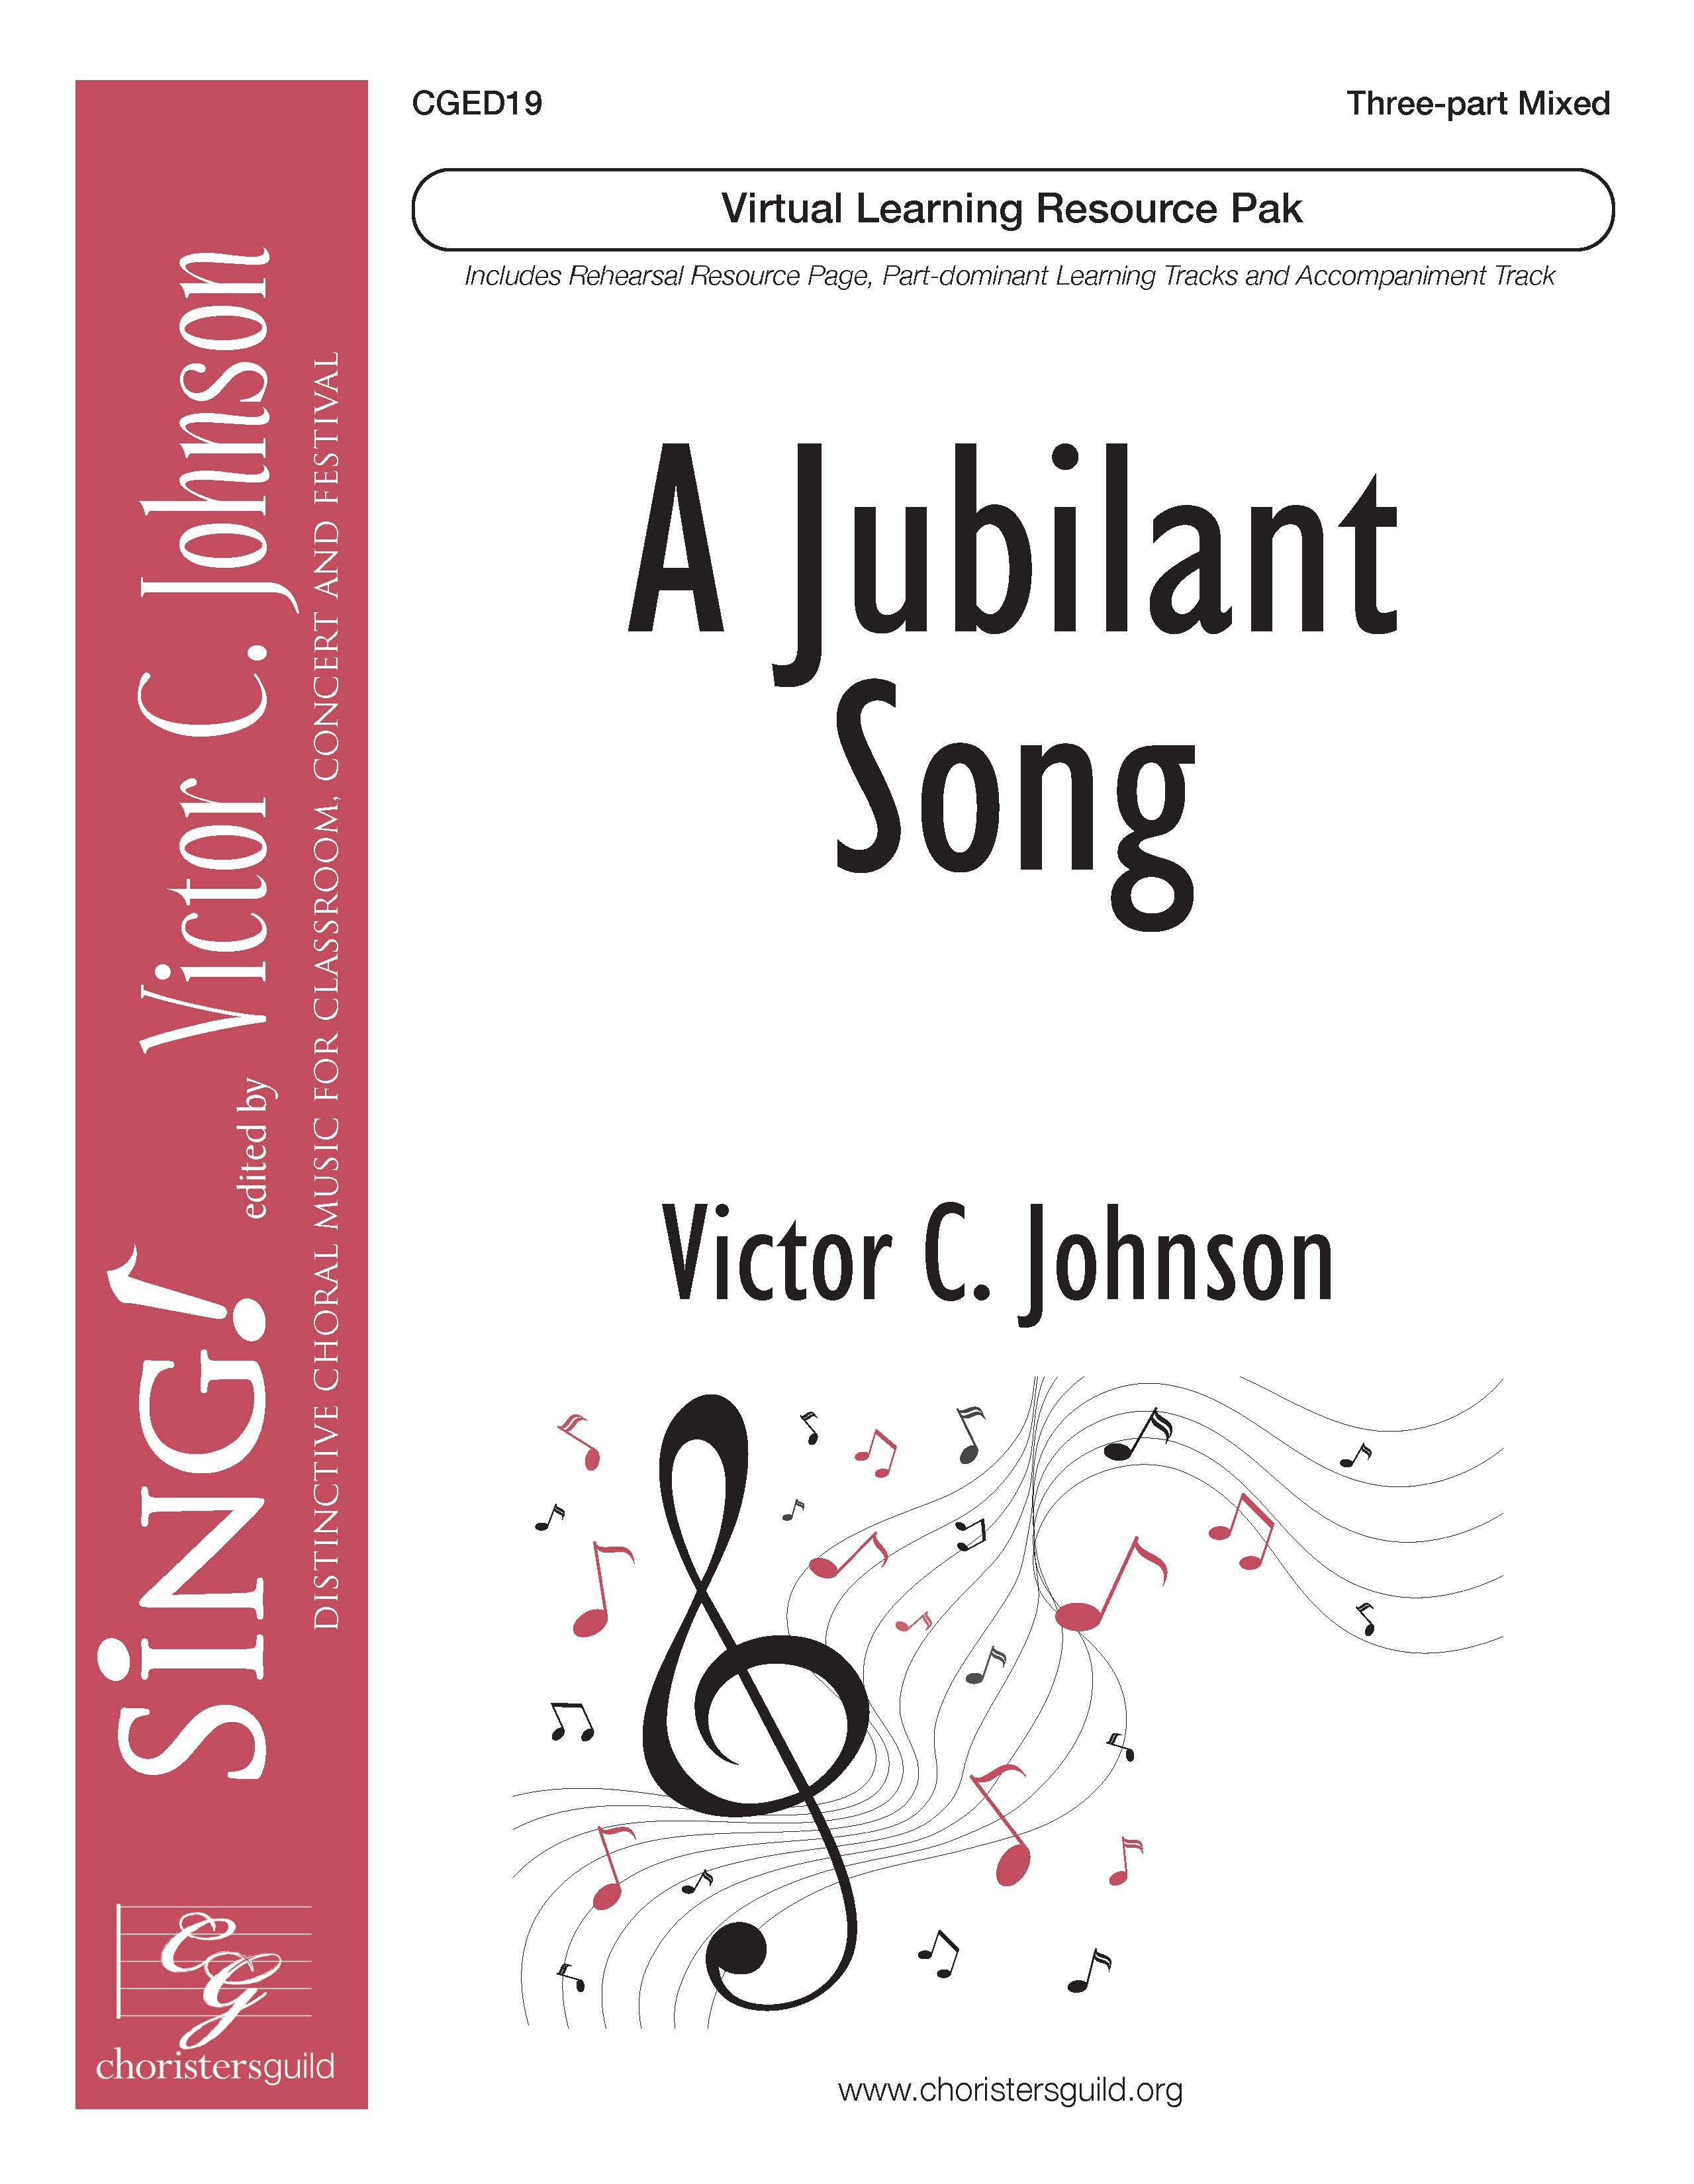 A Jubilant Song (Virtual Learning Resource Pak) - Three-part Mixed